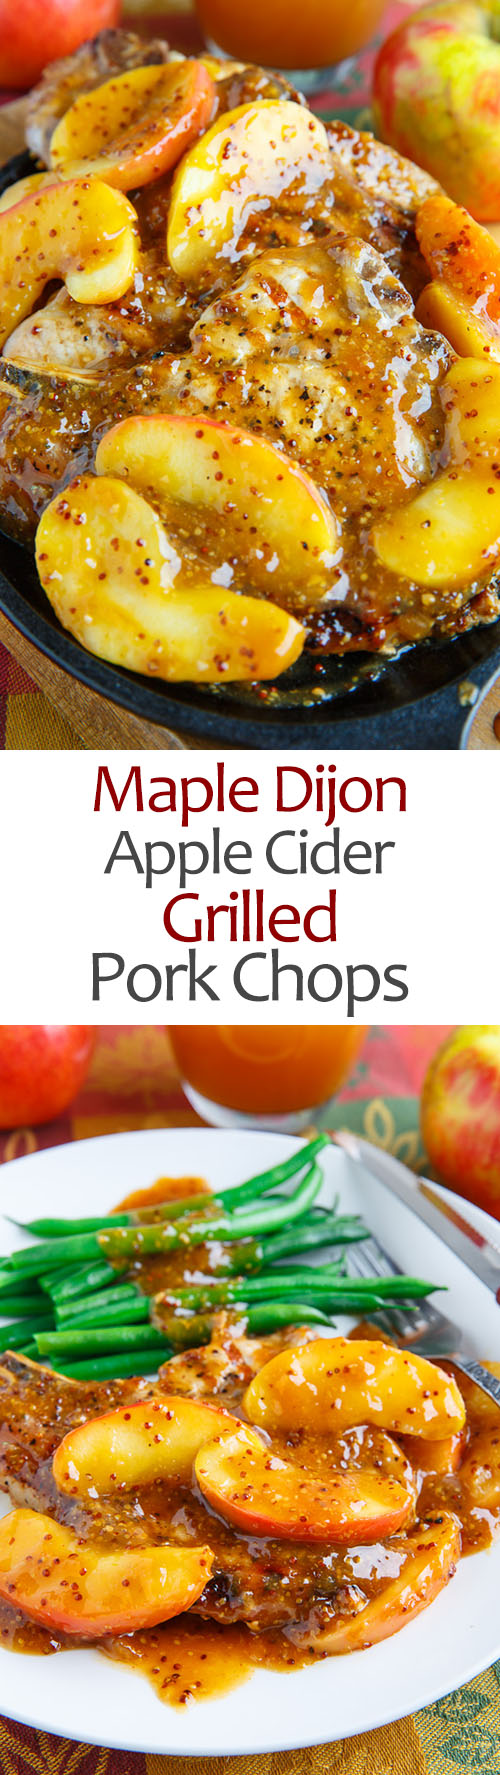 Maple Dijon Apple Cider Grilled Pork Chops